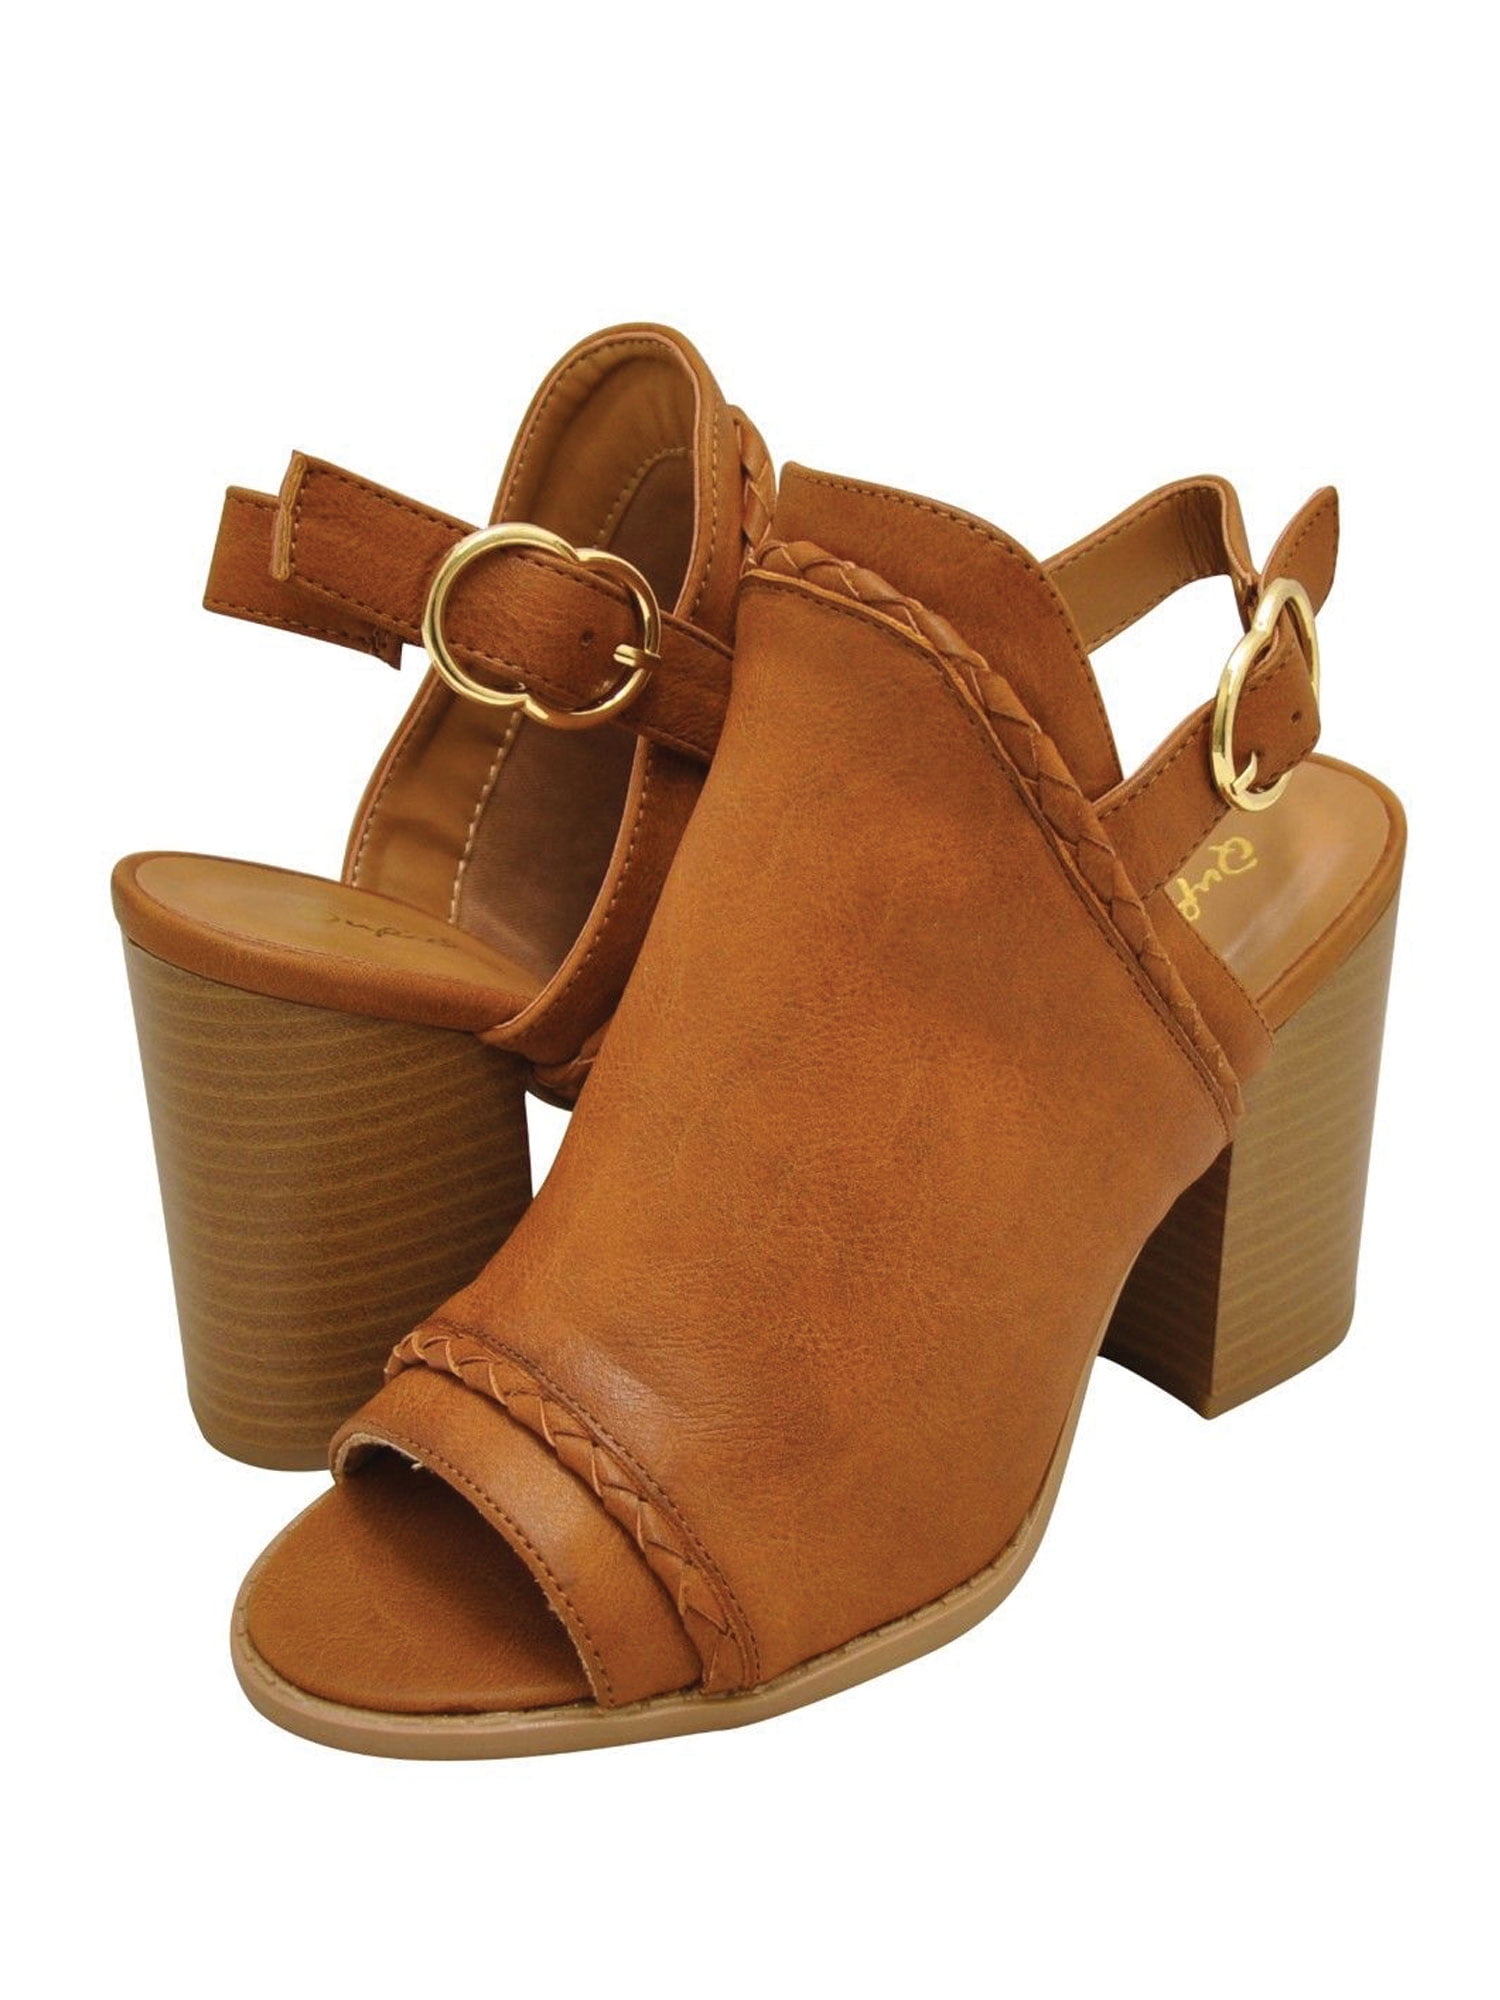 women's mule heels closed toe